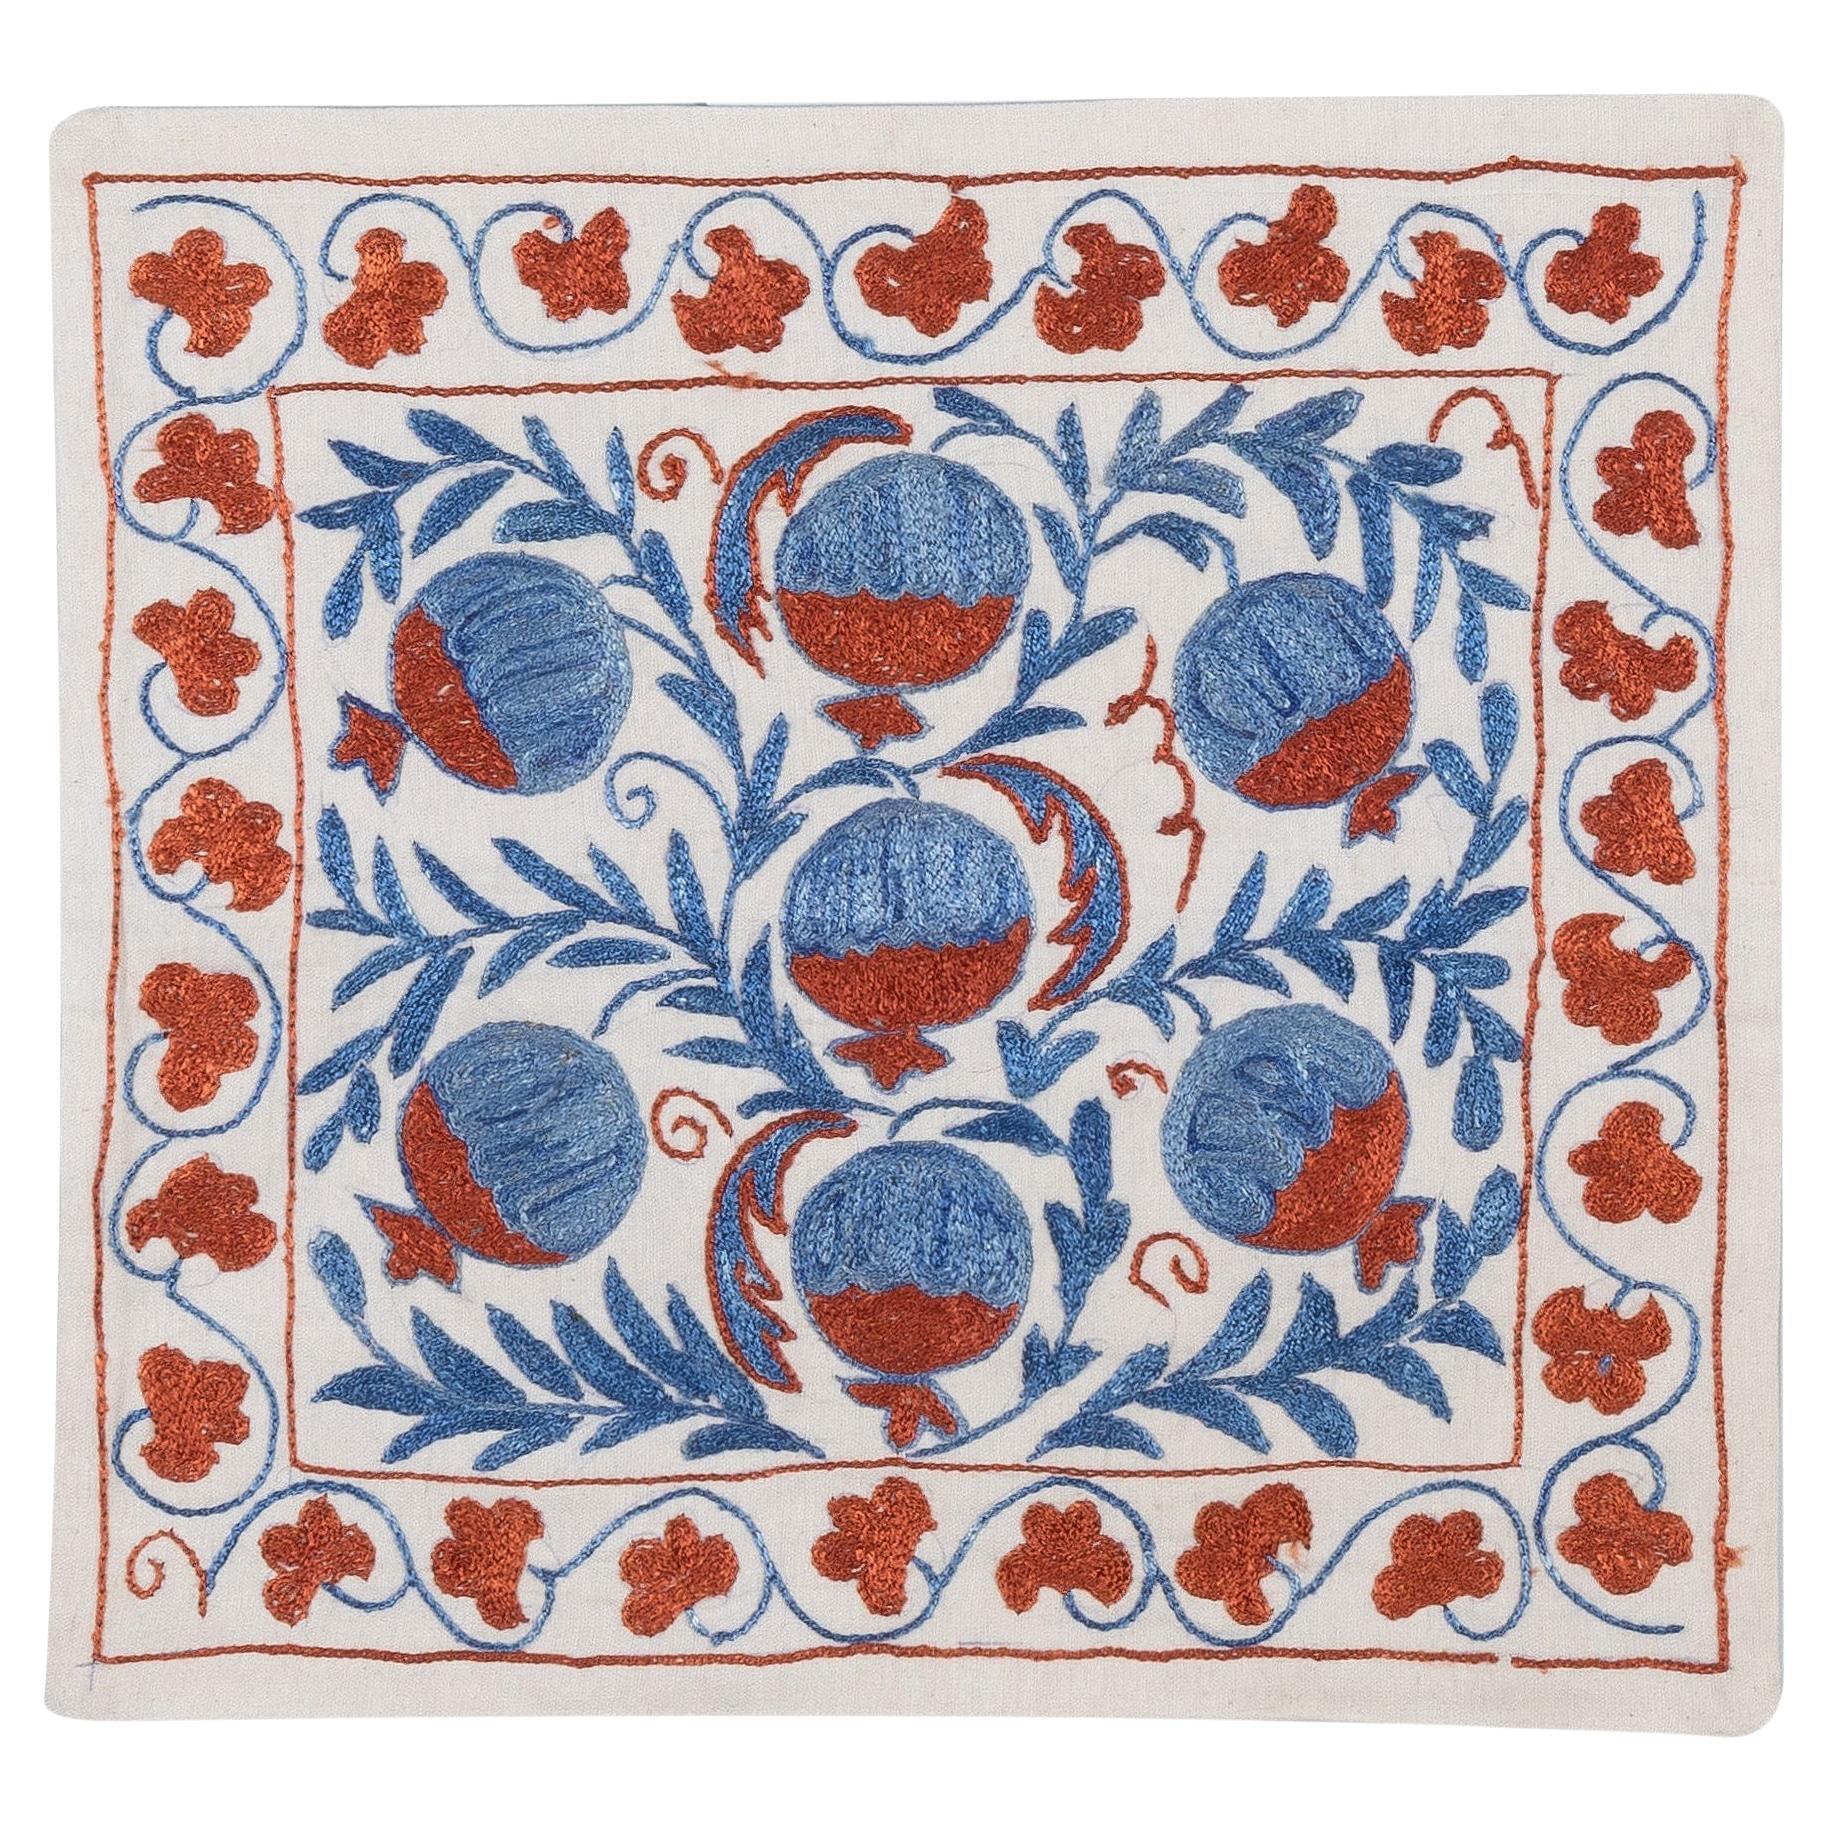 16 "x18" Housse de coussin en dentelle brodée de soie neuve faite à la main en rouge, bleu et crème